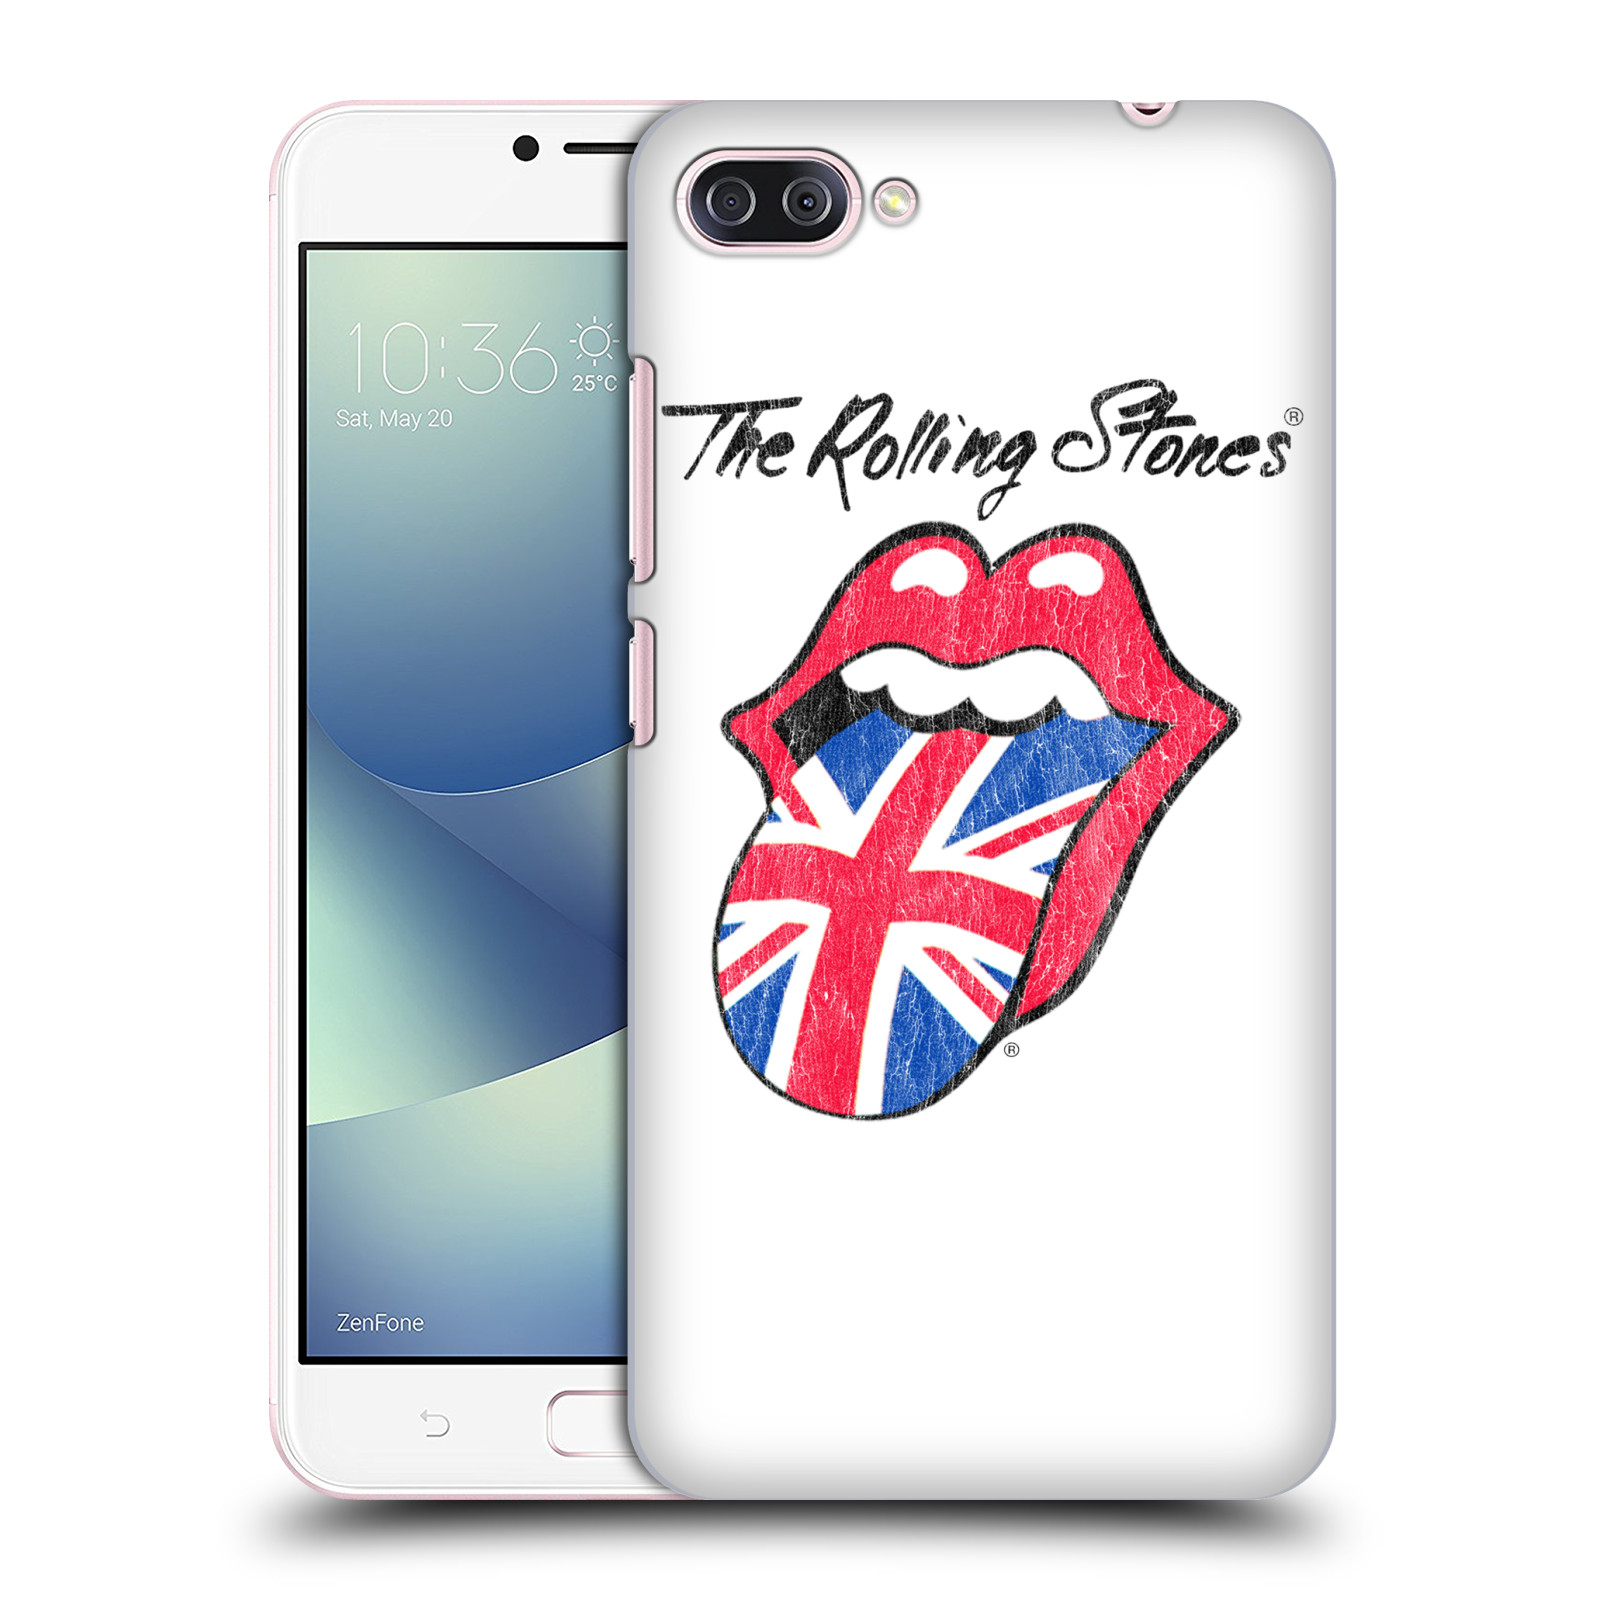 HEAD CASE plastový obal na mobil Asus Zenfone 4 MAX ZC554KL rocková skupina Rolling Stones bílé pozadí